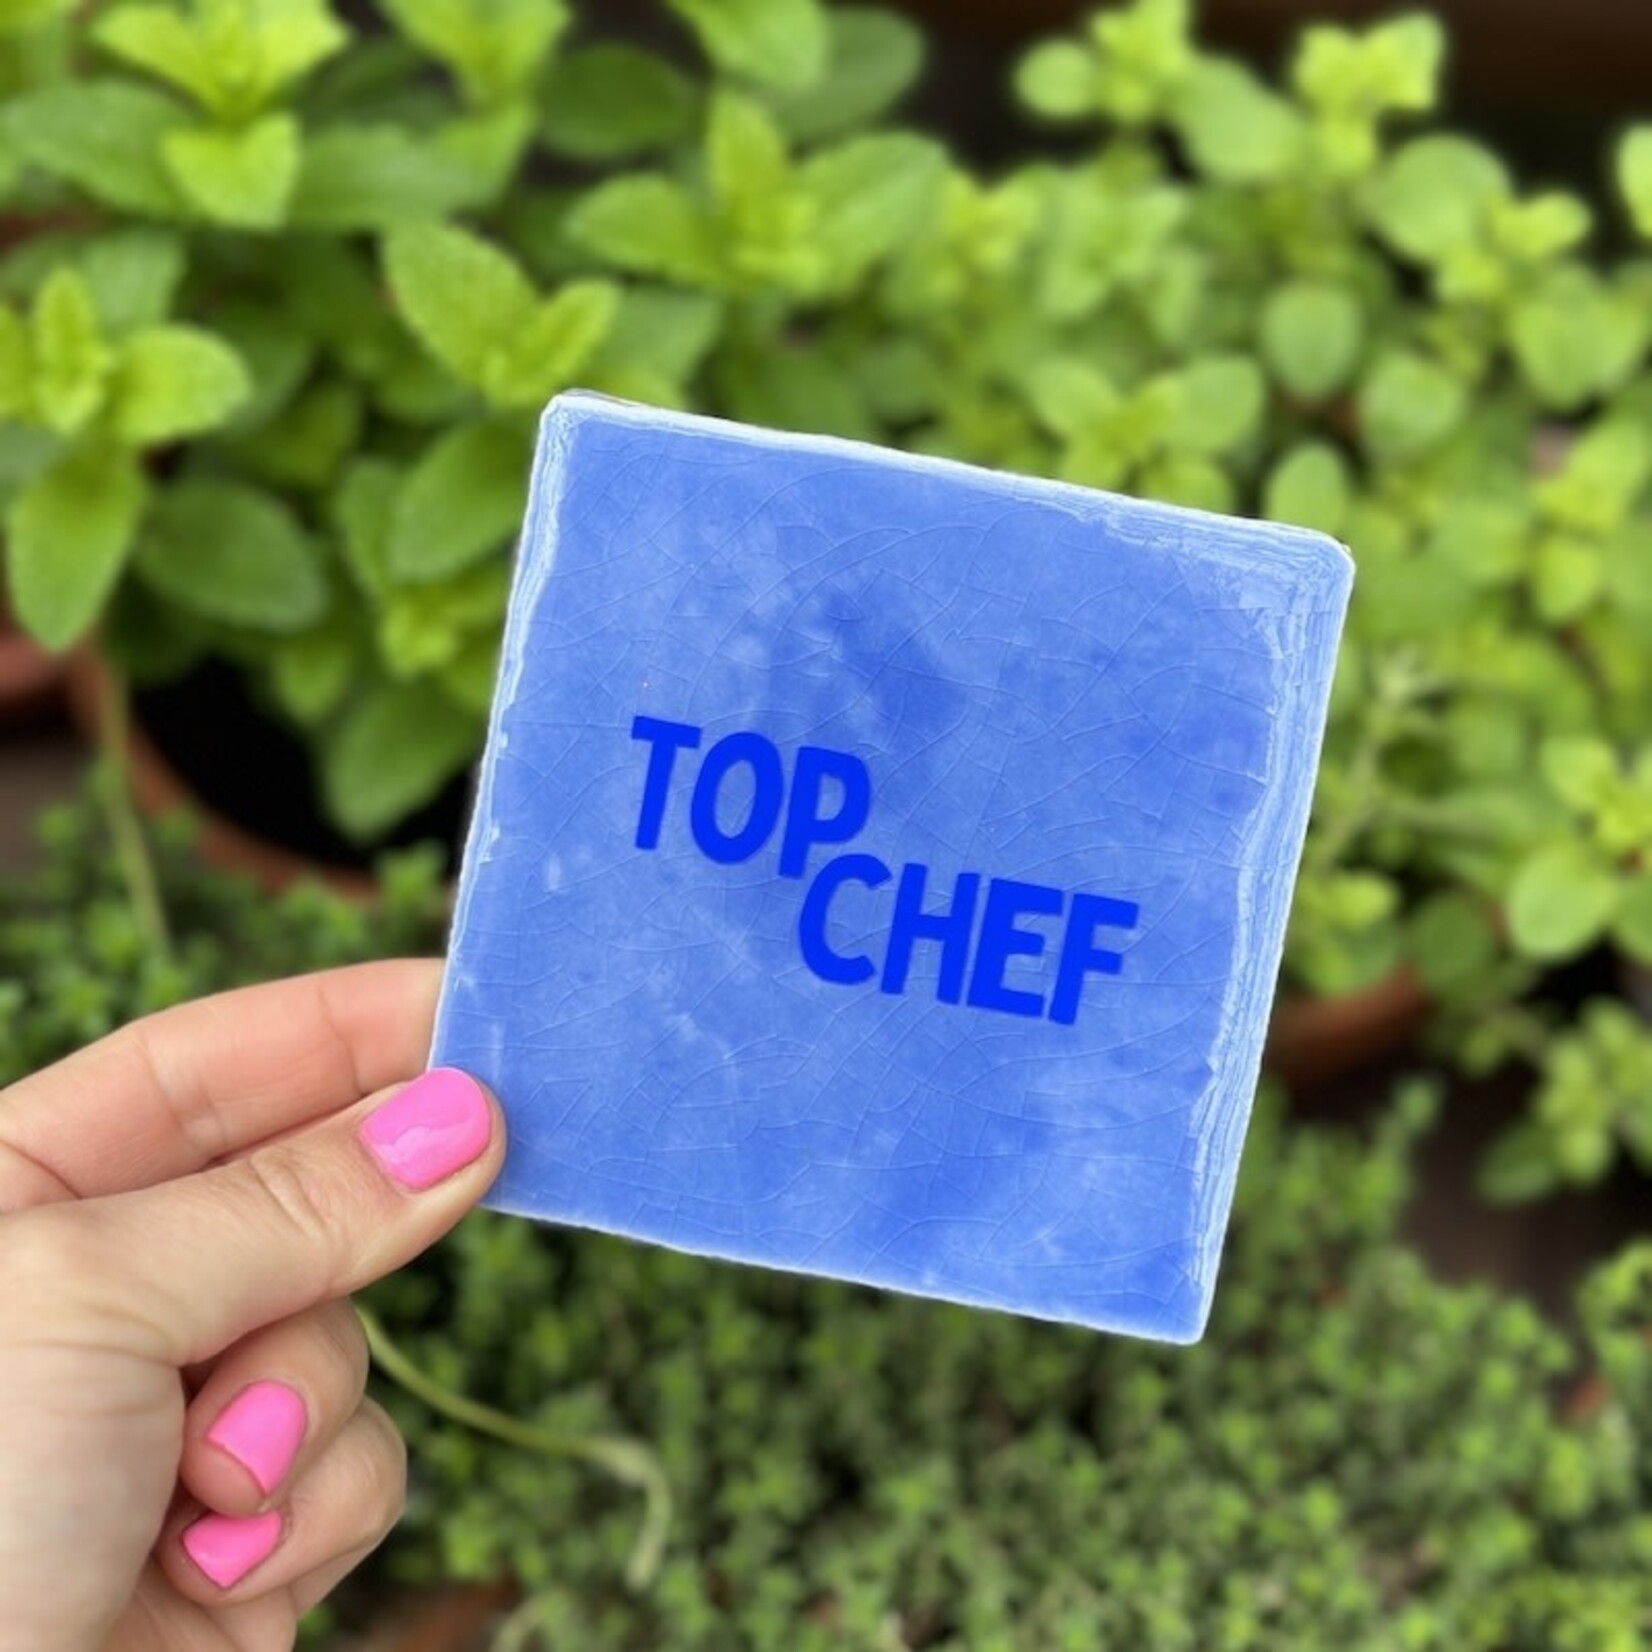 Bludd Tegeltje - Top chef, blauw met kobaltblauw